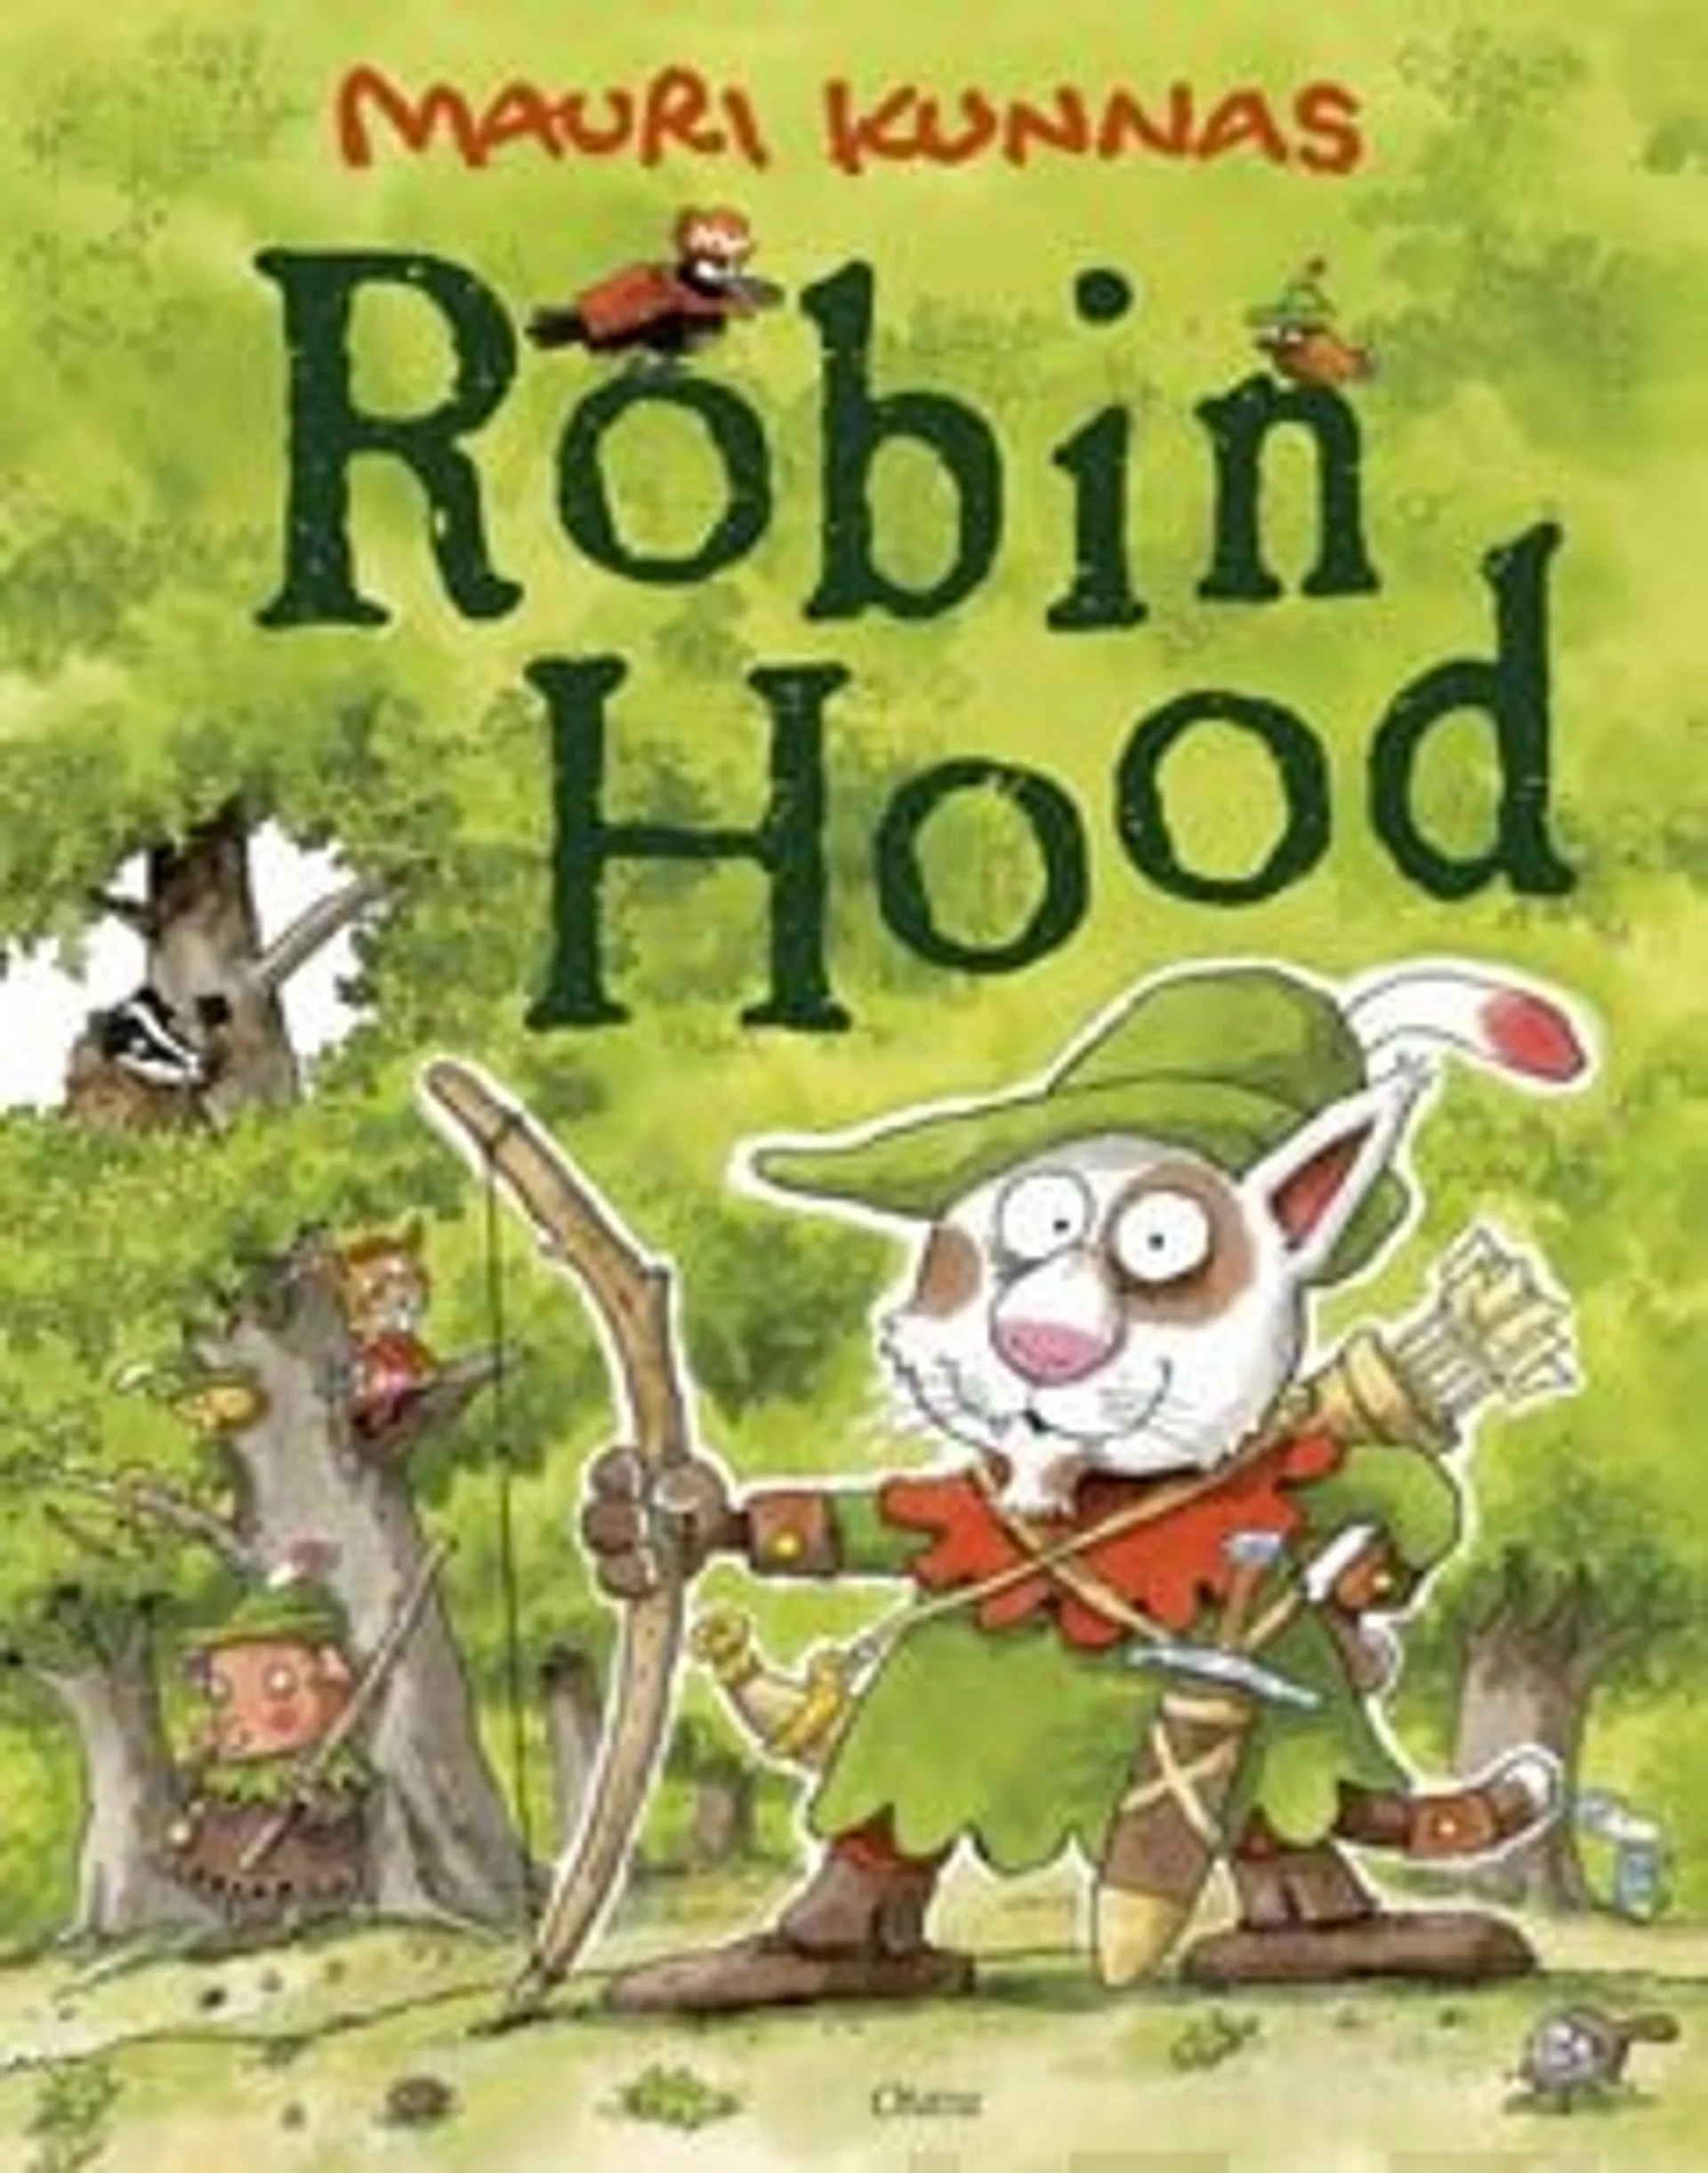 Kunnas, Robin Hood